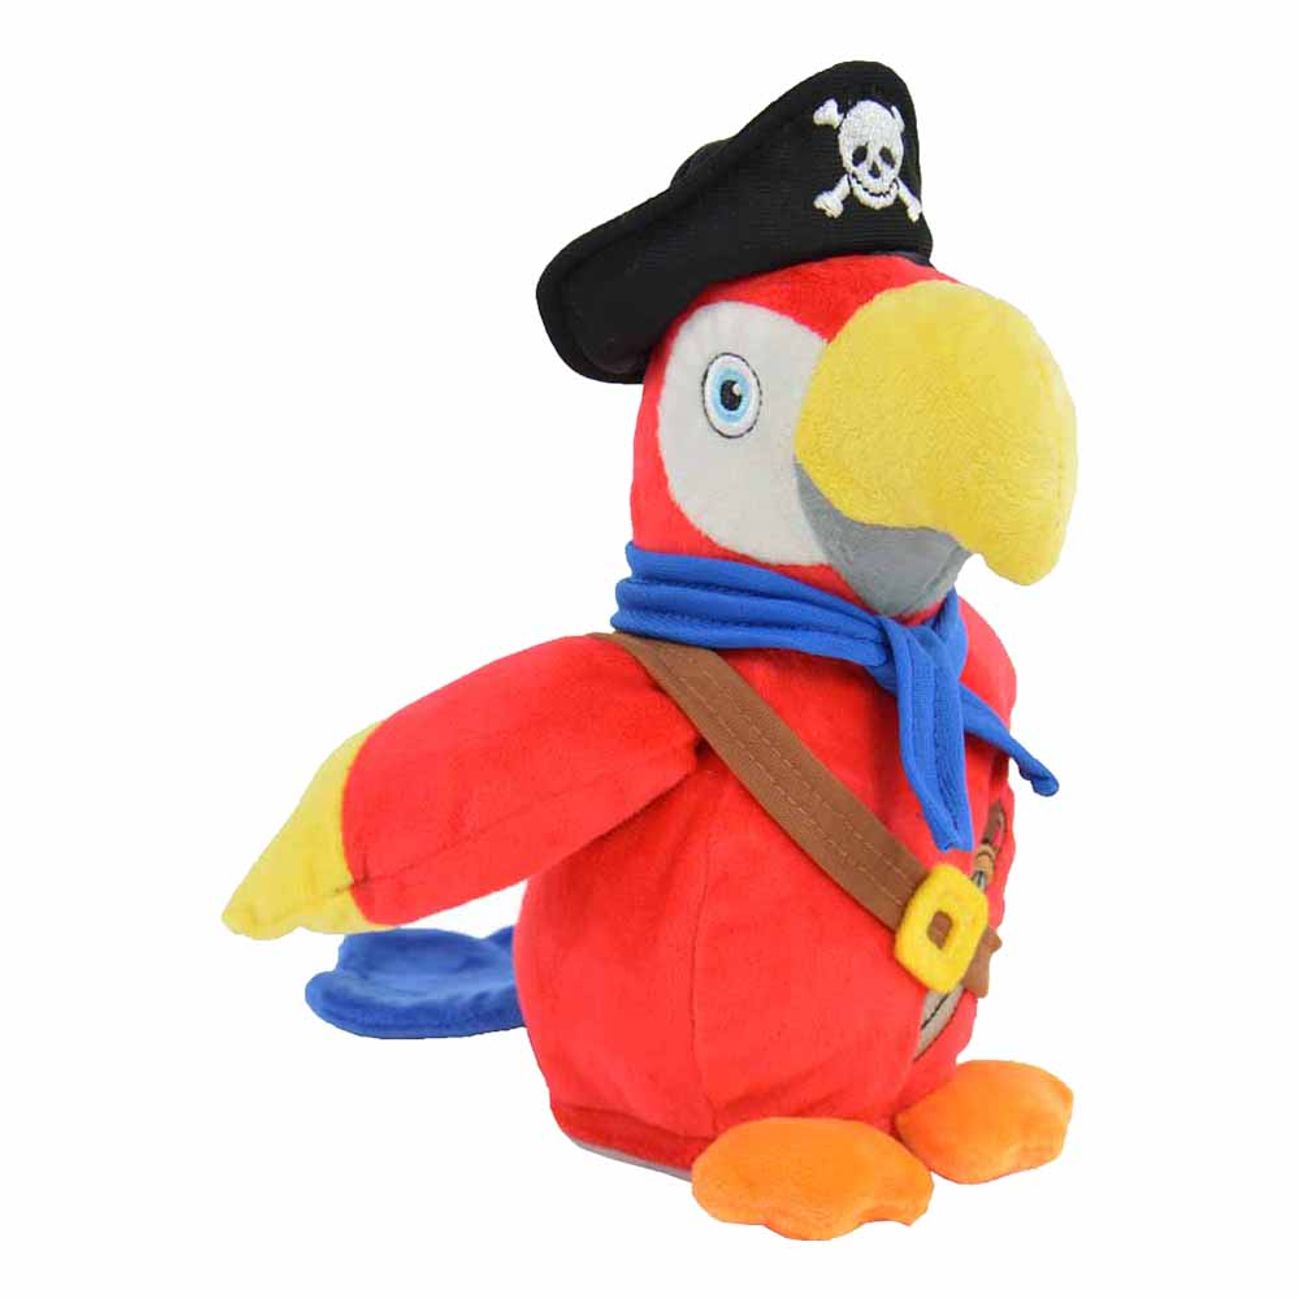 harmdjur-pirat-papegojan-parry-79548-1